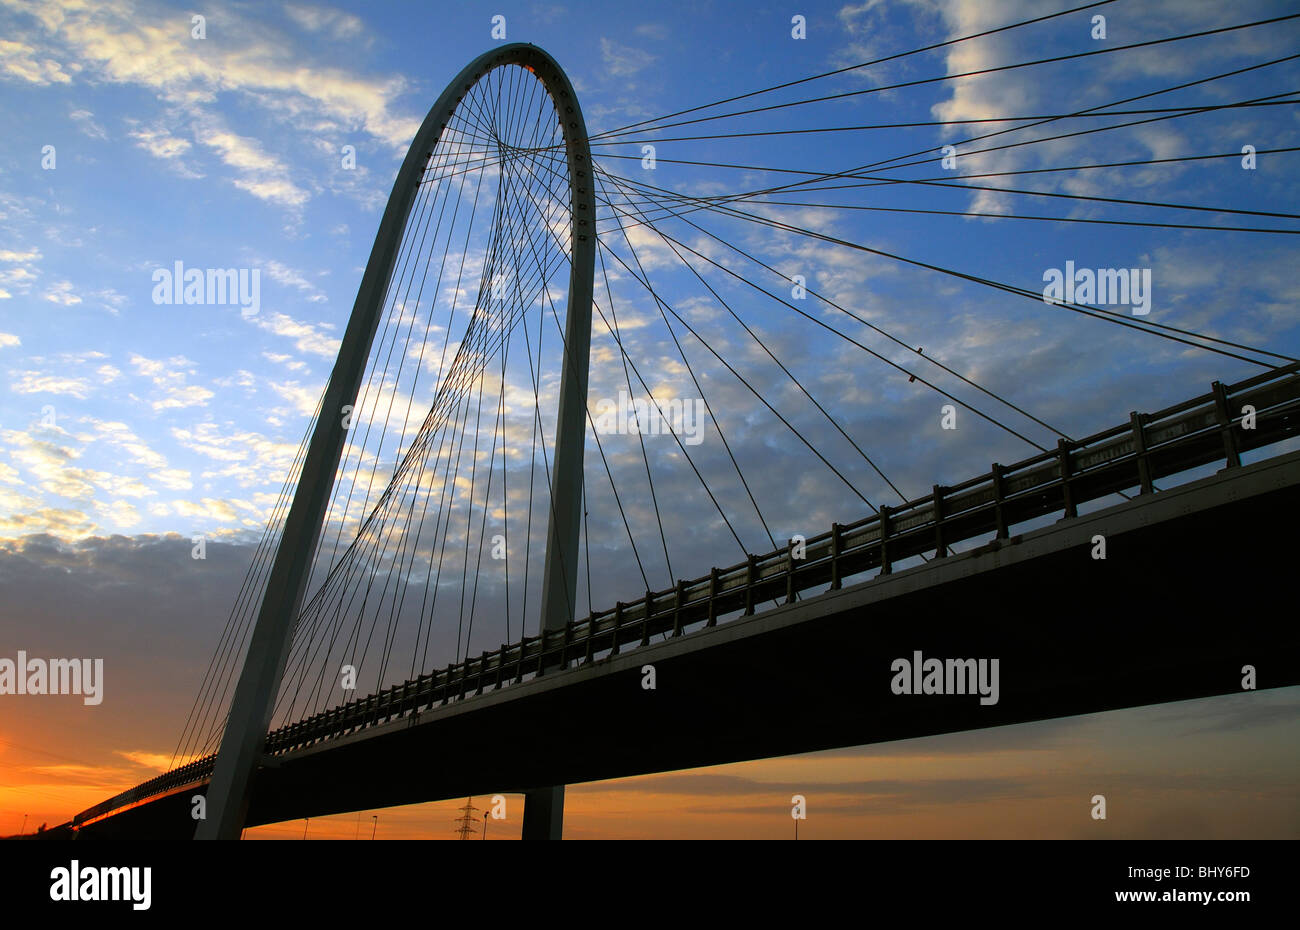 Italy, Emilia Romagna, Reggio Emilia, austostrada del sole (highway), Santiago Calatrava bridge Stock Photo